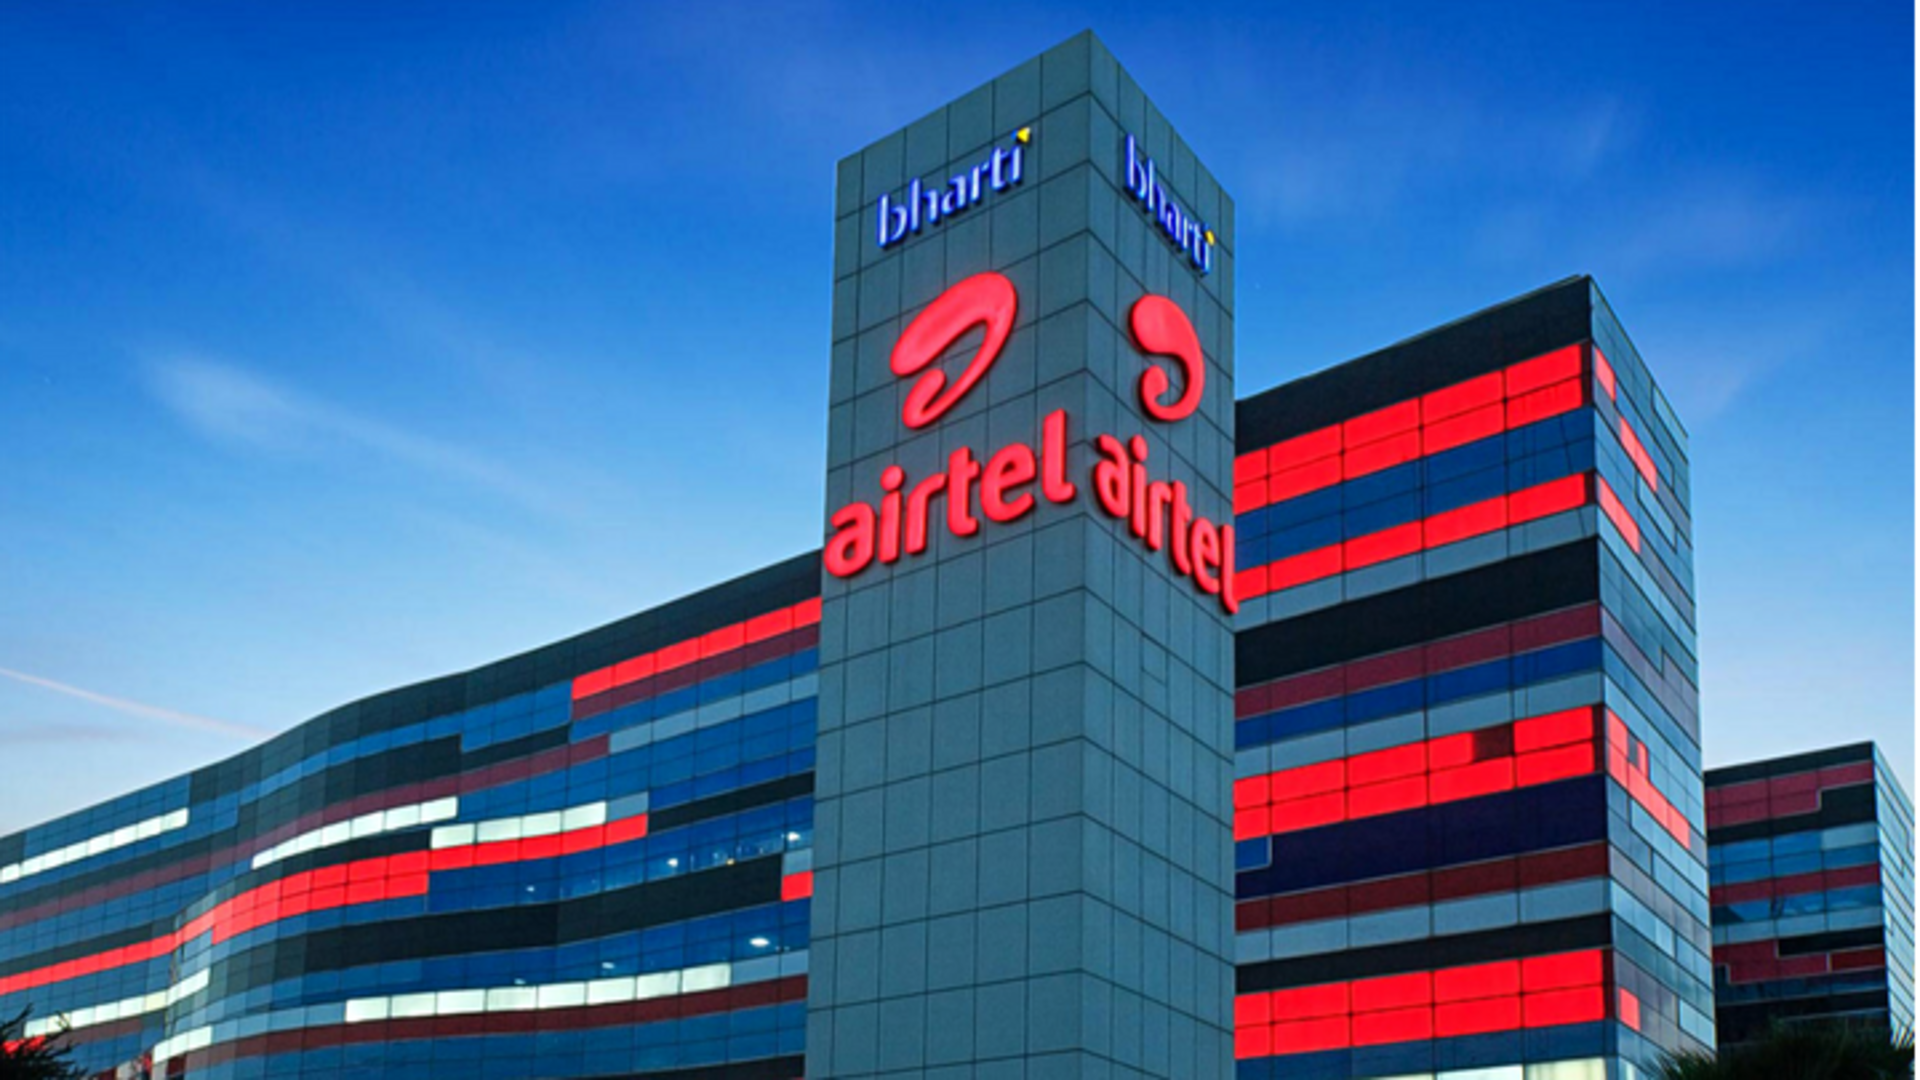 Bharti Airtel acquires additional 5G spectrum for ₹6,857 crore